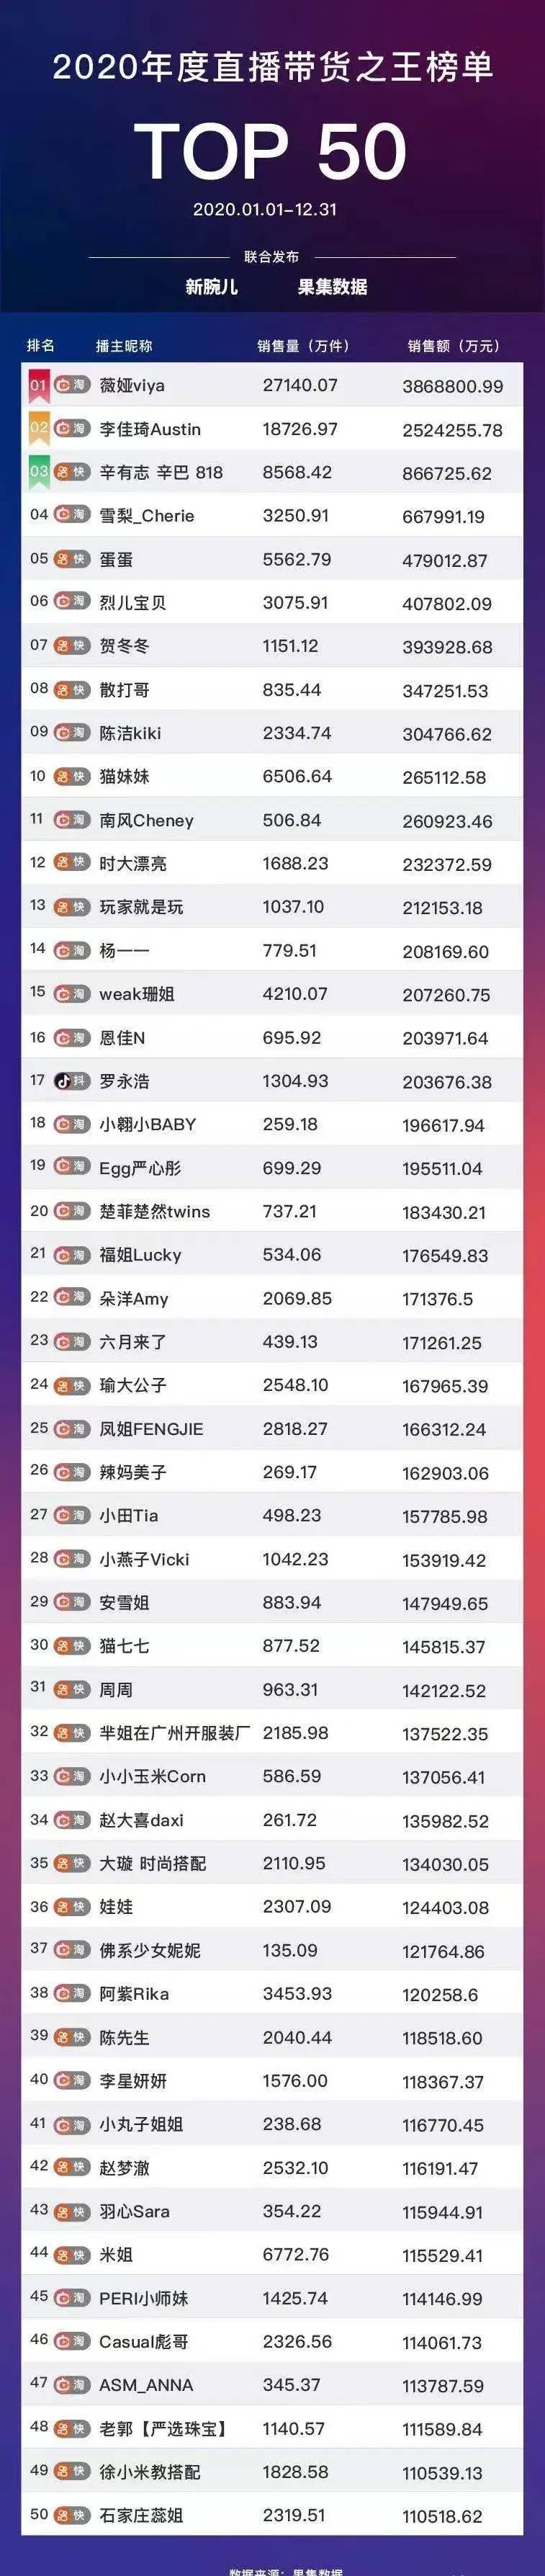 网红赚钱排行_中国最赚钱的网红排名来了,薇娅、李佳琦上榜